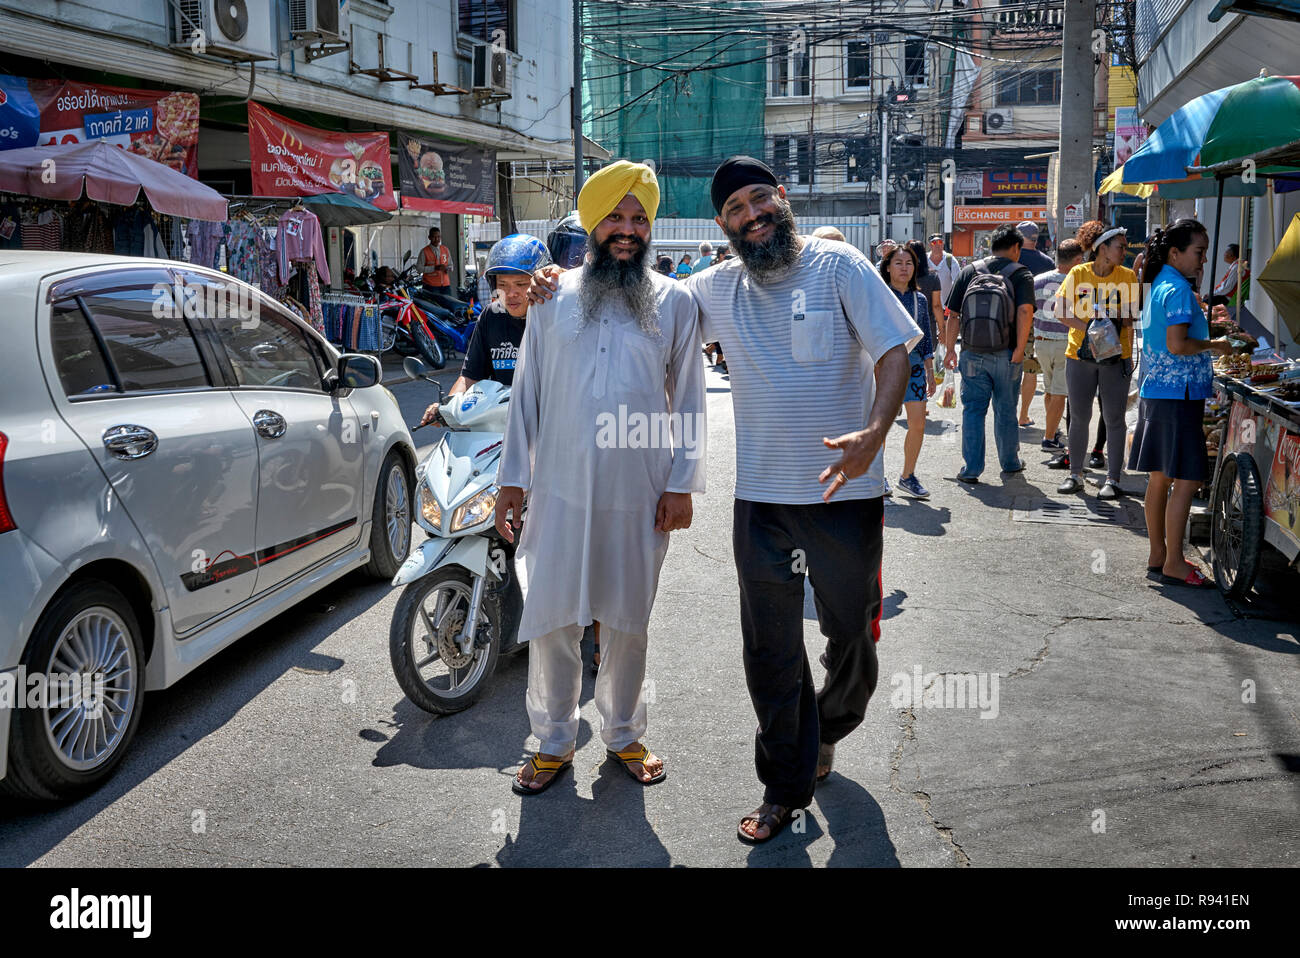 Indische Sikh traditionelle Kurta Pyjama-Shirt und Turban Kopfbekleidung Gegen sein westlich getragenes Gegenstück - modern gegen traditionell Stockfoto